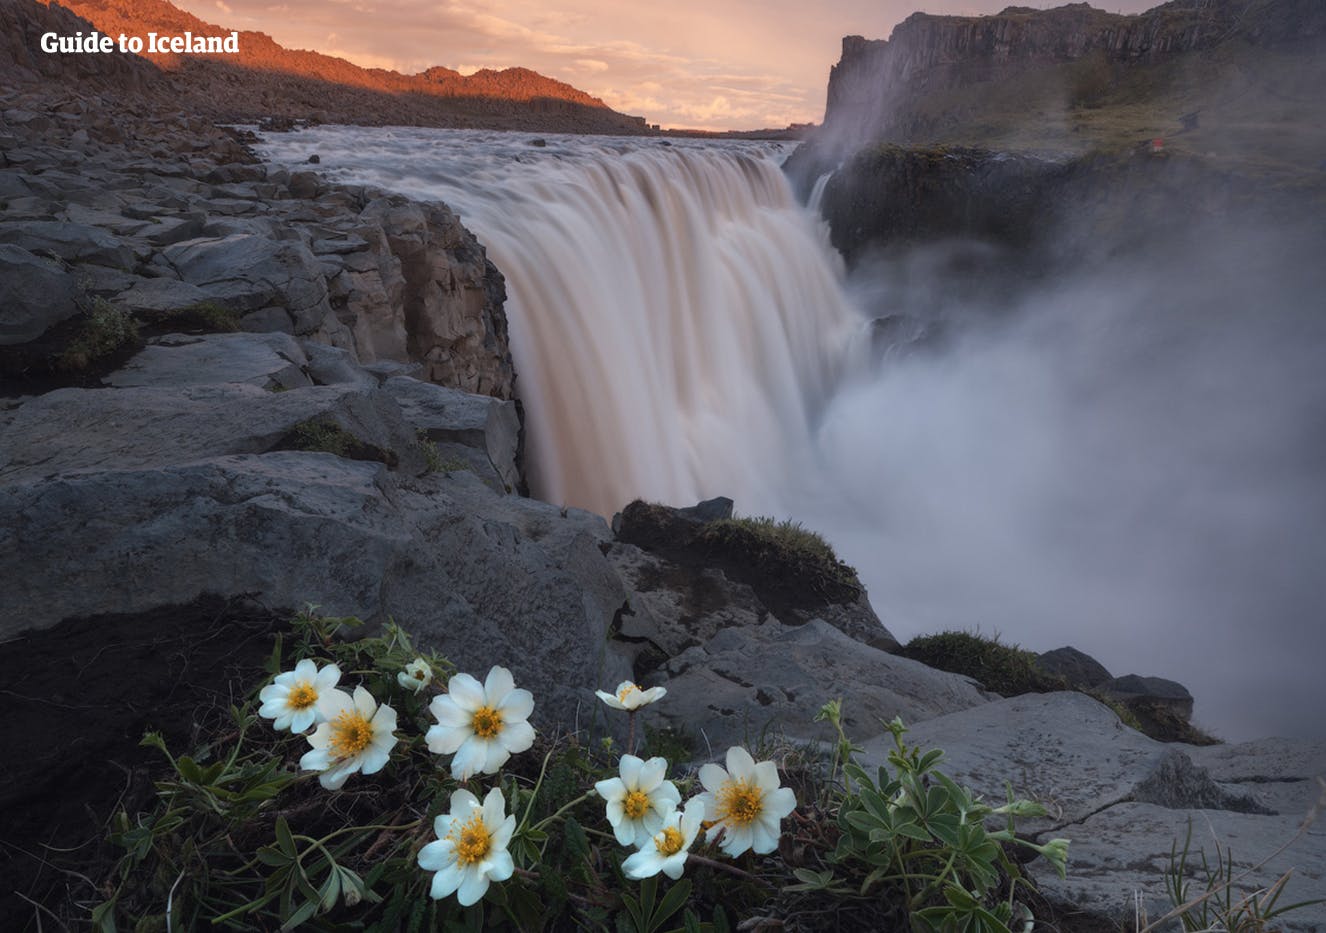 Sommerblumen blühen am Rand von Europas stärkstem Wasserfall Dettifoss.